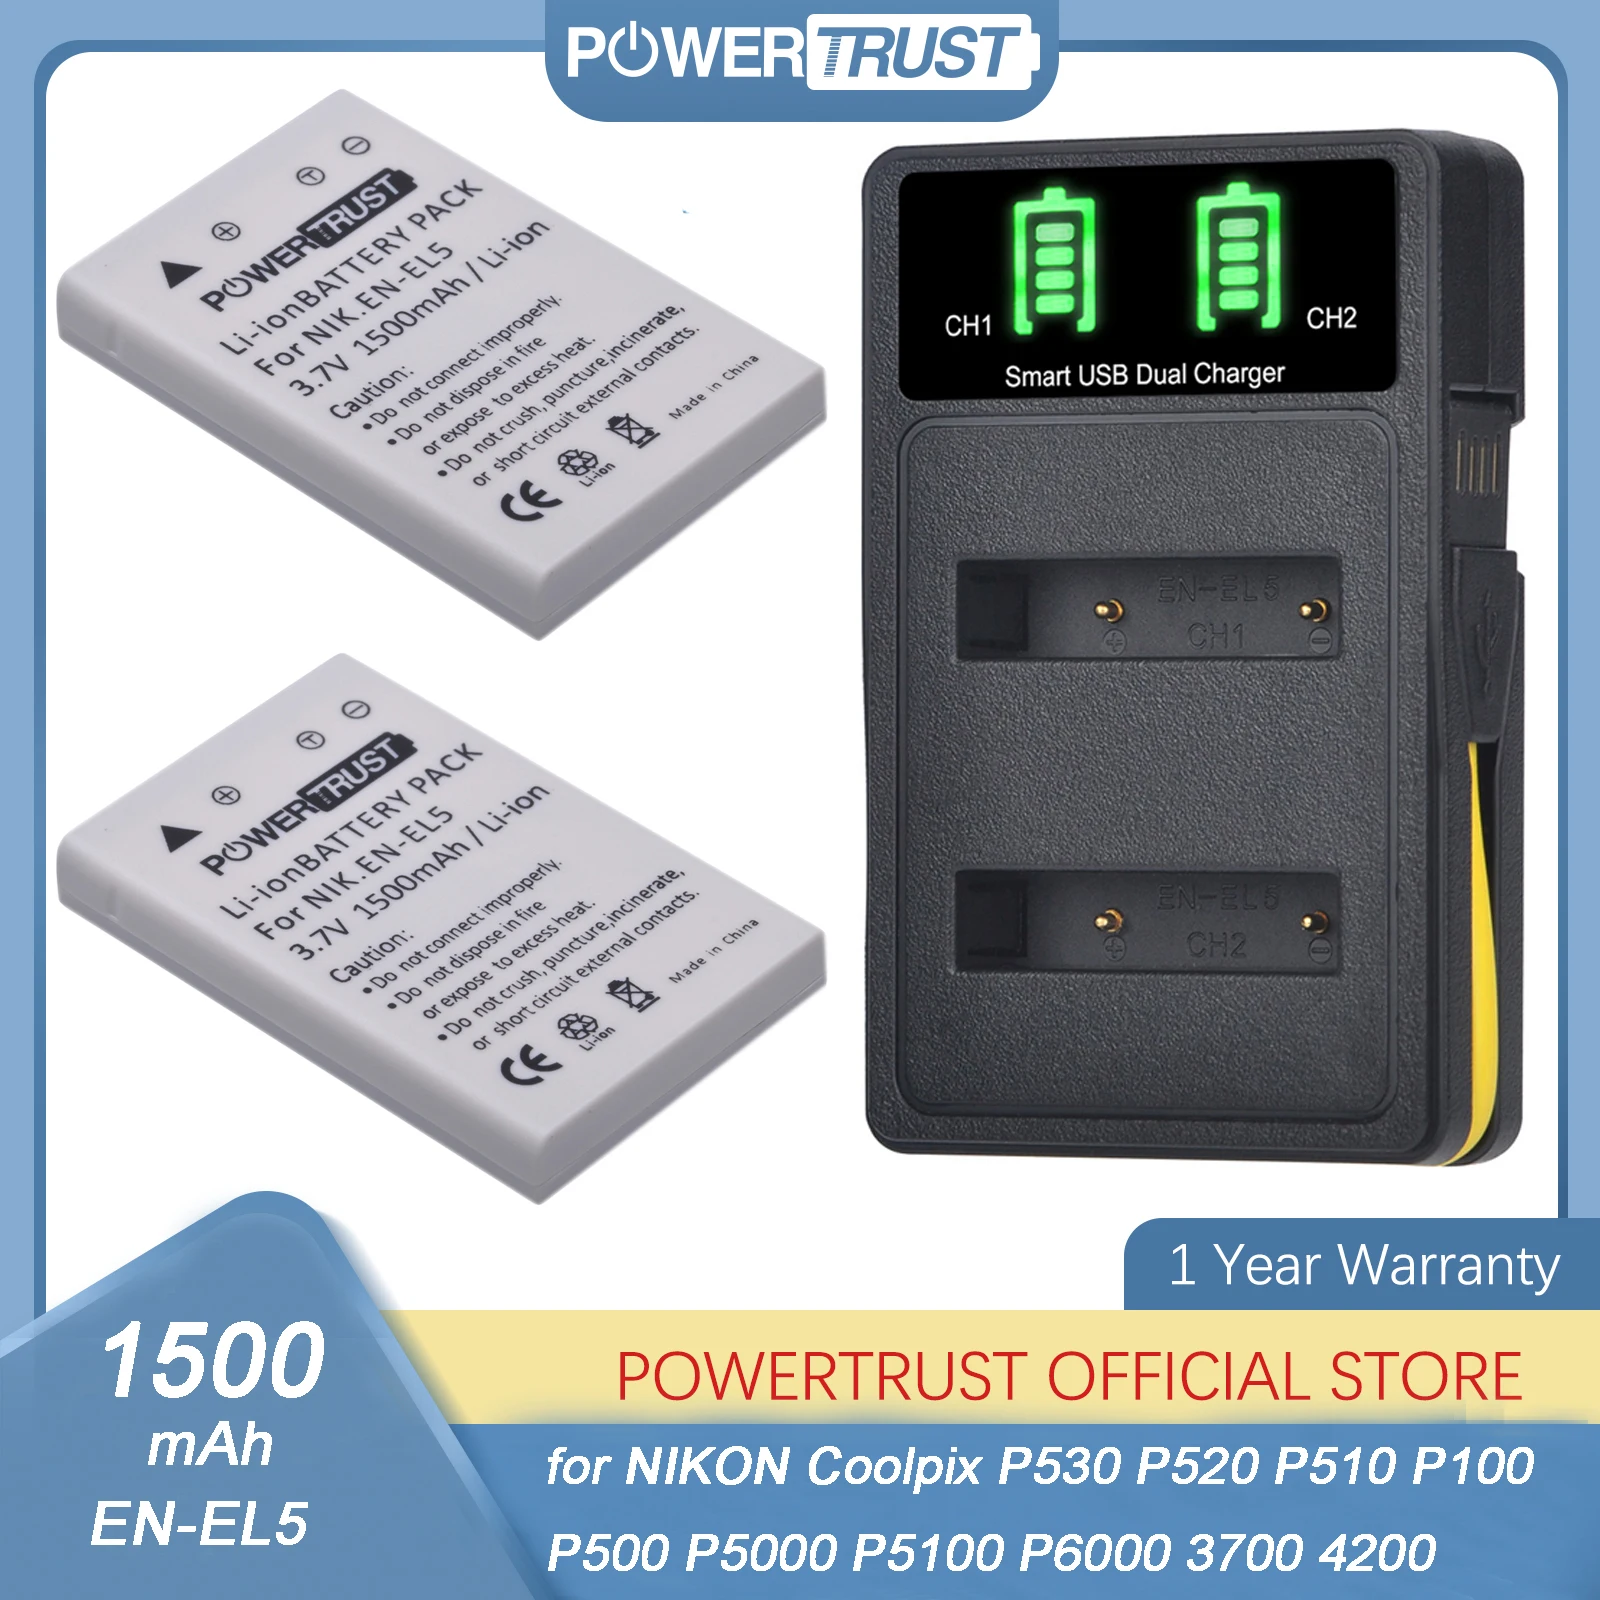 

EN-EL5 ENEL5 Battery and Charger for Nikon Coolpix 3700, 4200, 5200, 5900, 7900, P3, P4, P80, P90, P100, P500, P510, P520, P530